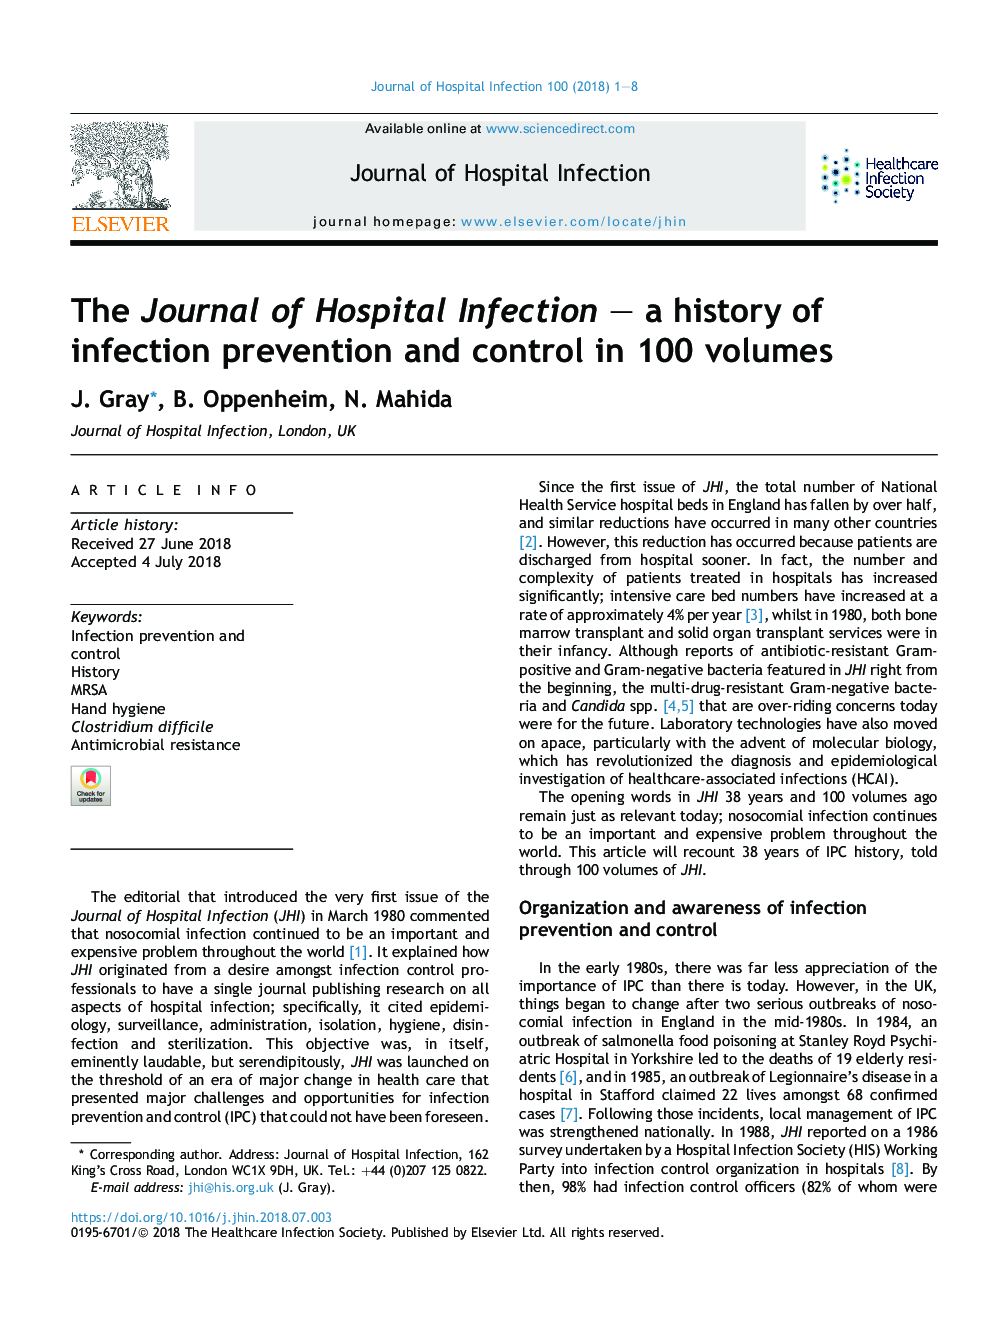 مجله عفونت بیمارستان - تاریخچه پیشگیری و کنترل عفونت در 100 جلد است